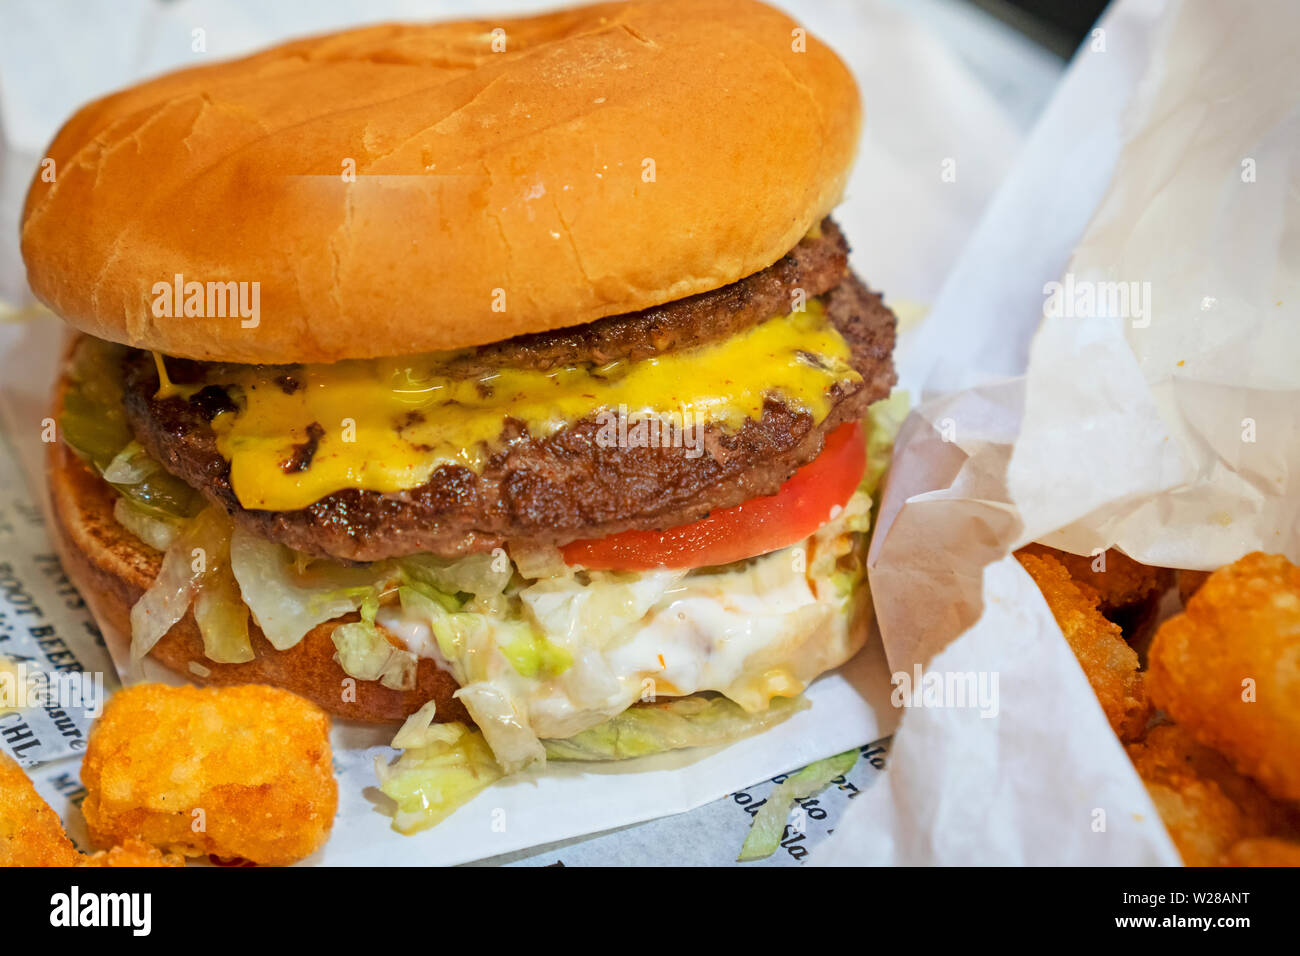 Cheesburger und Tater Tots sitzen auf dem Zeitungspapier - Typ menu mit einem Diner. Fast food Konzept. Fokus auf der Vorderseite des Burger Add-ons. Stockfoto